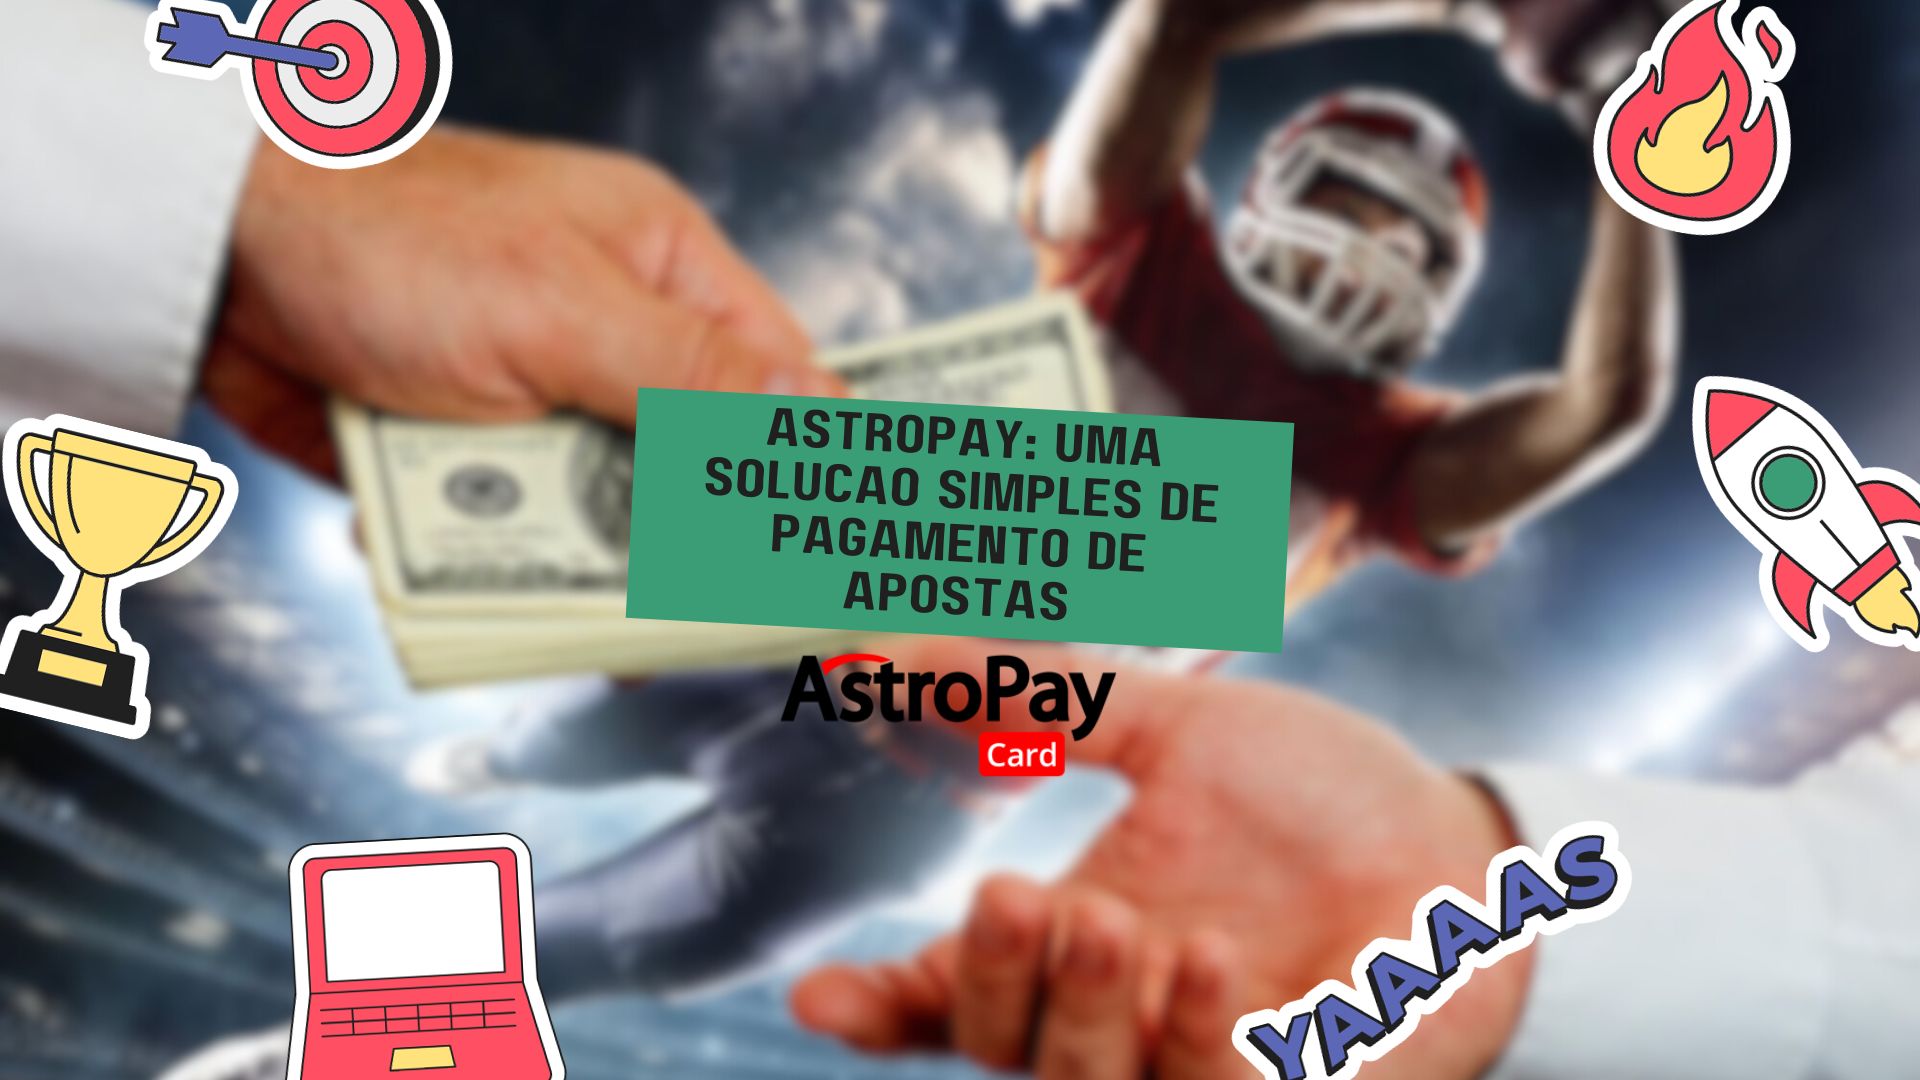 Astropay: Uma solução simples de pagamento de apostas